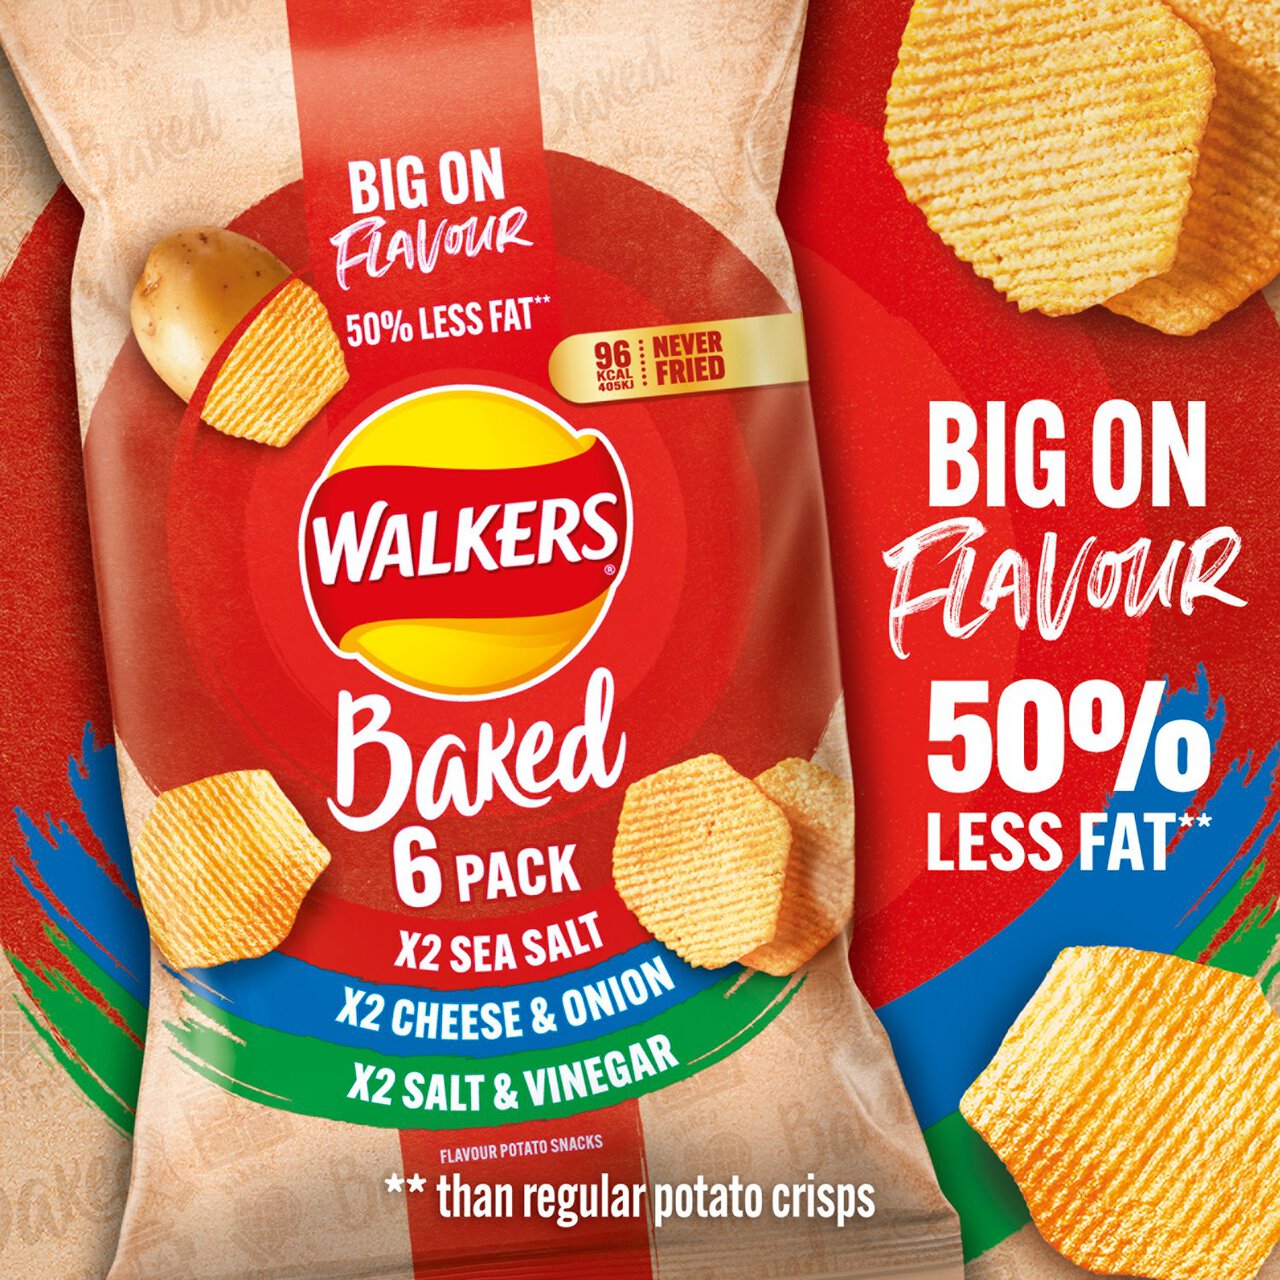 Walkers Baked Variety Multipack Snacks 6 per pack